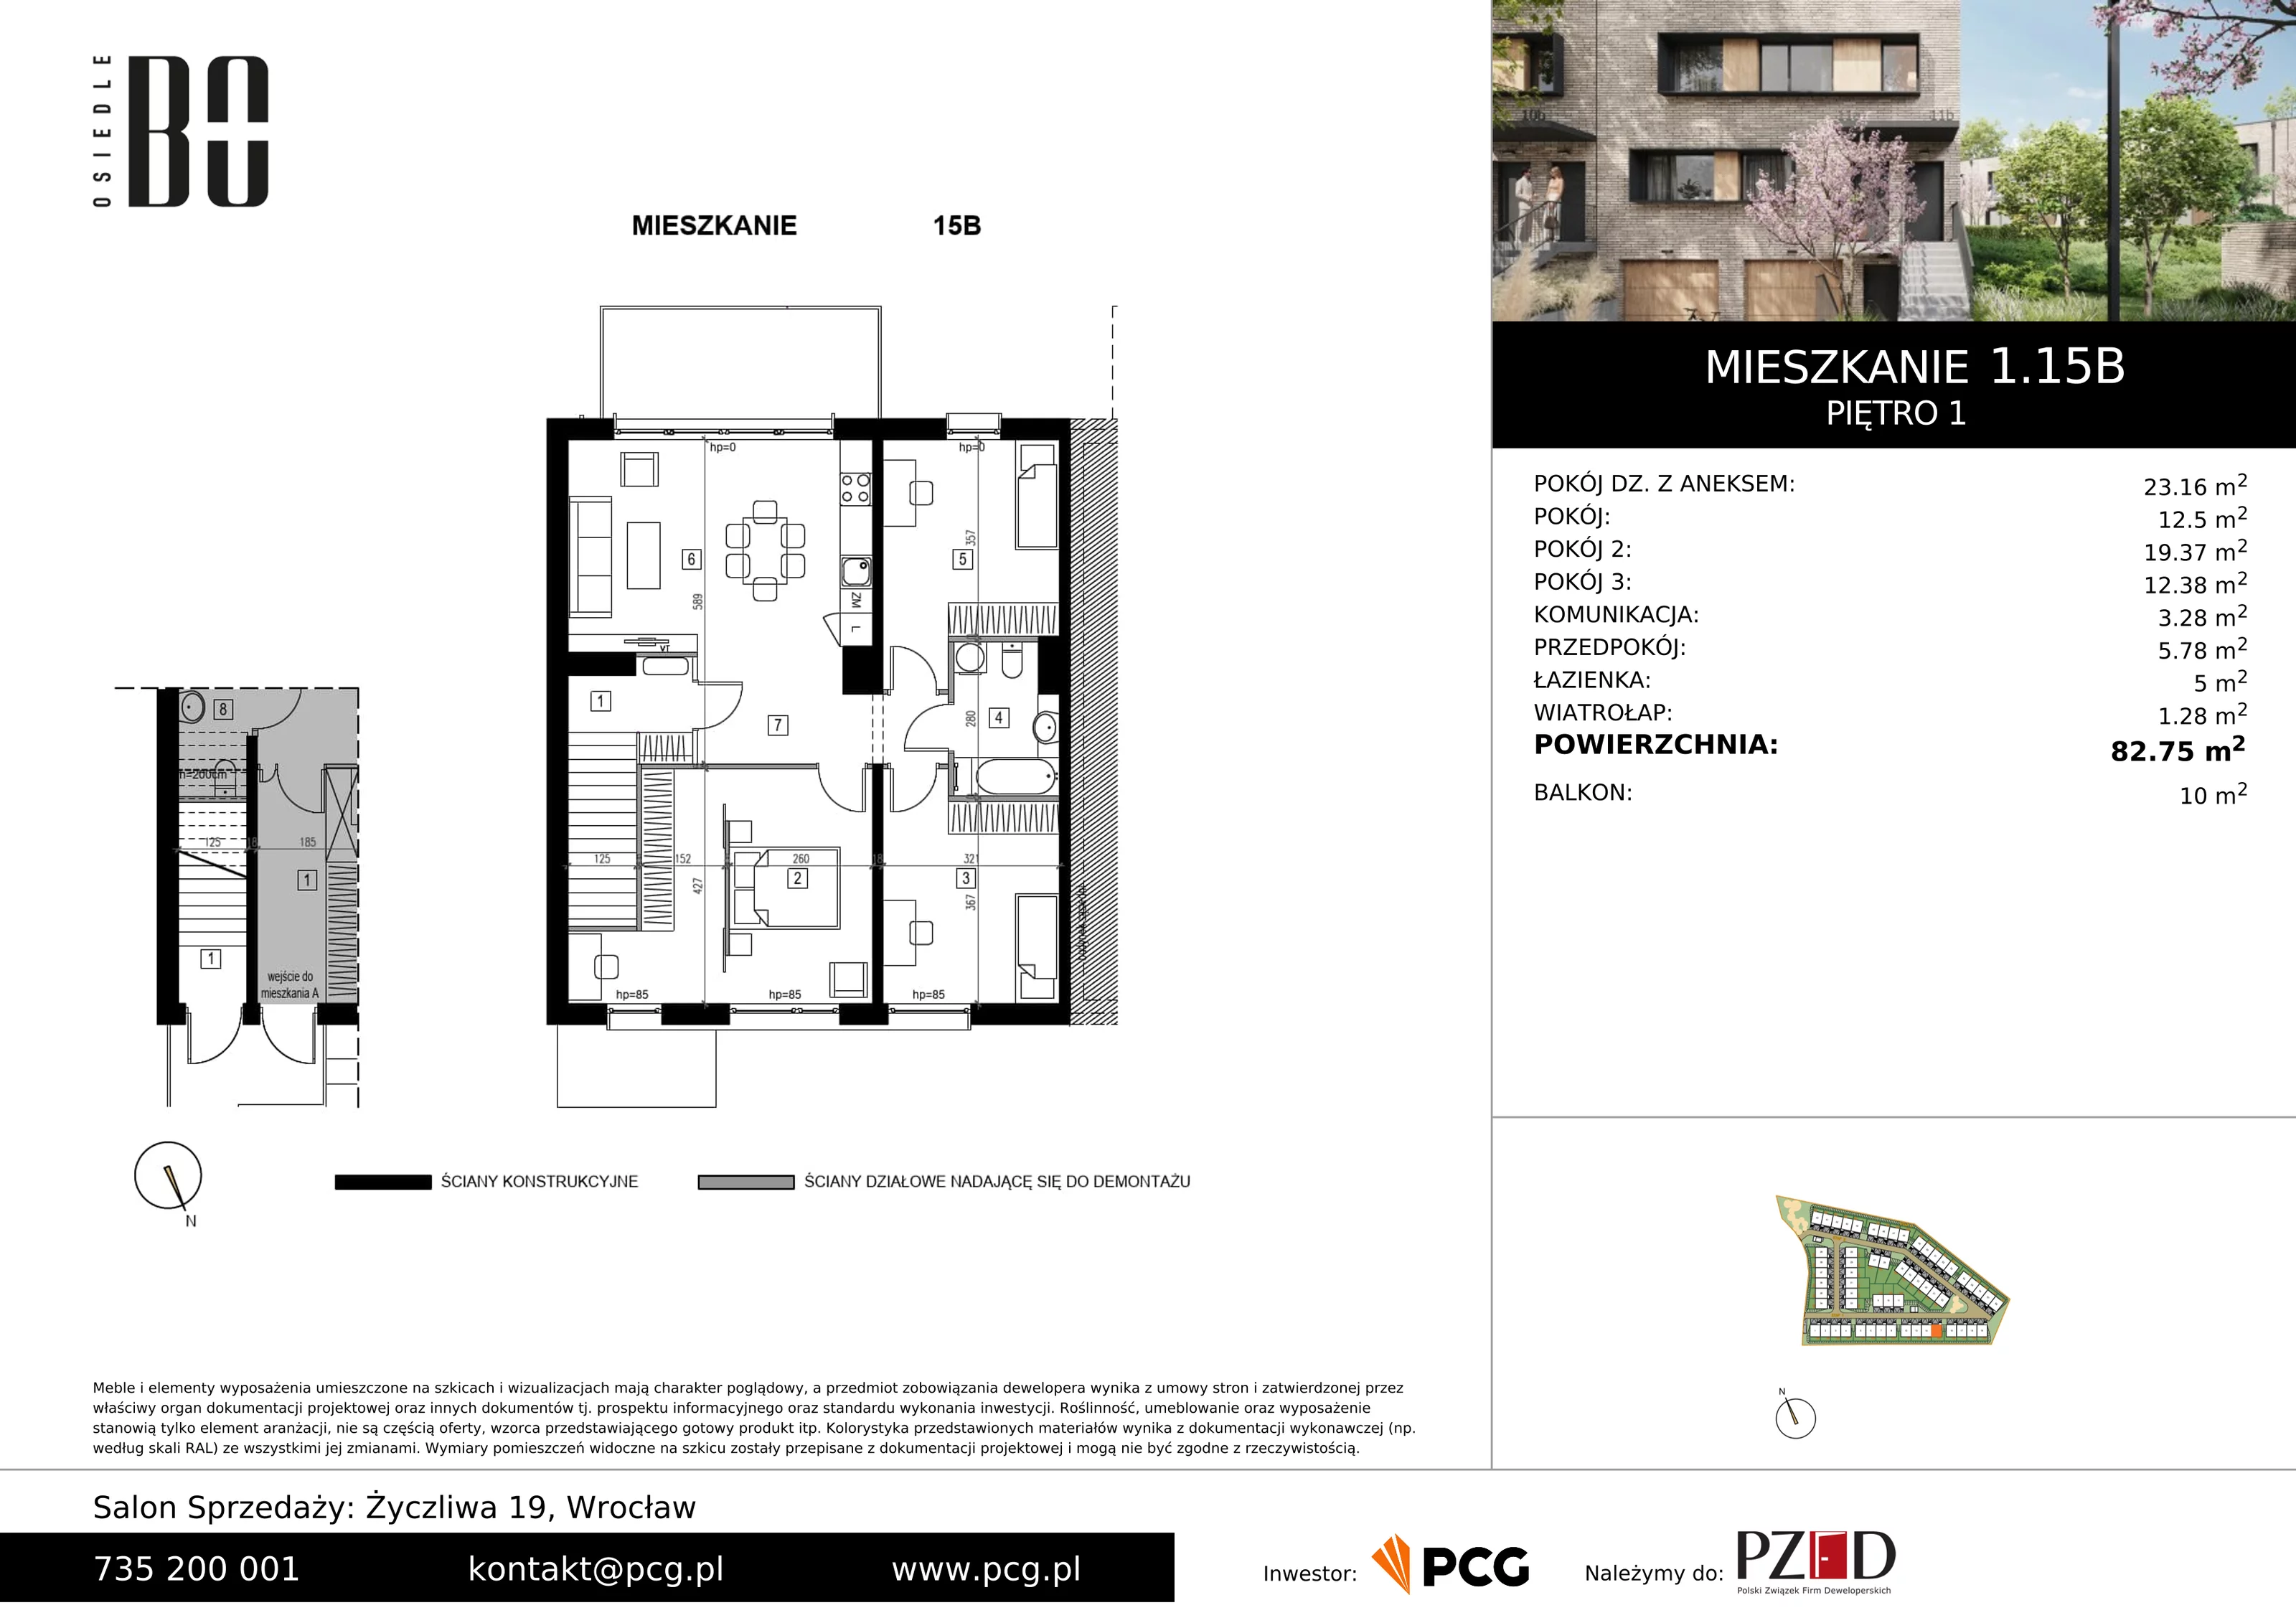 Apartament 82,75 m², piętro 1, oferta nr 1.15B, Osiedle BO, Wrocław, Kowale, ul. Bociana